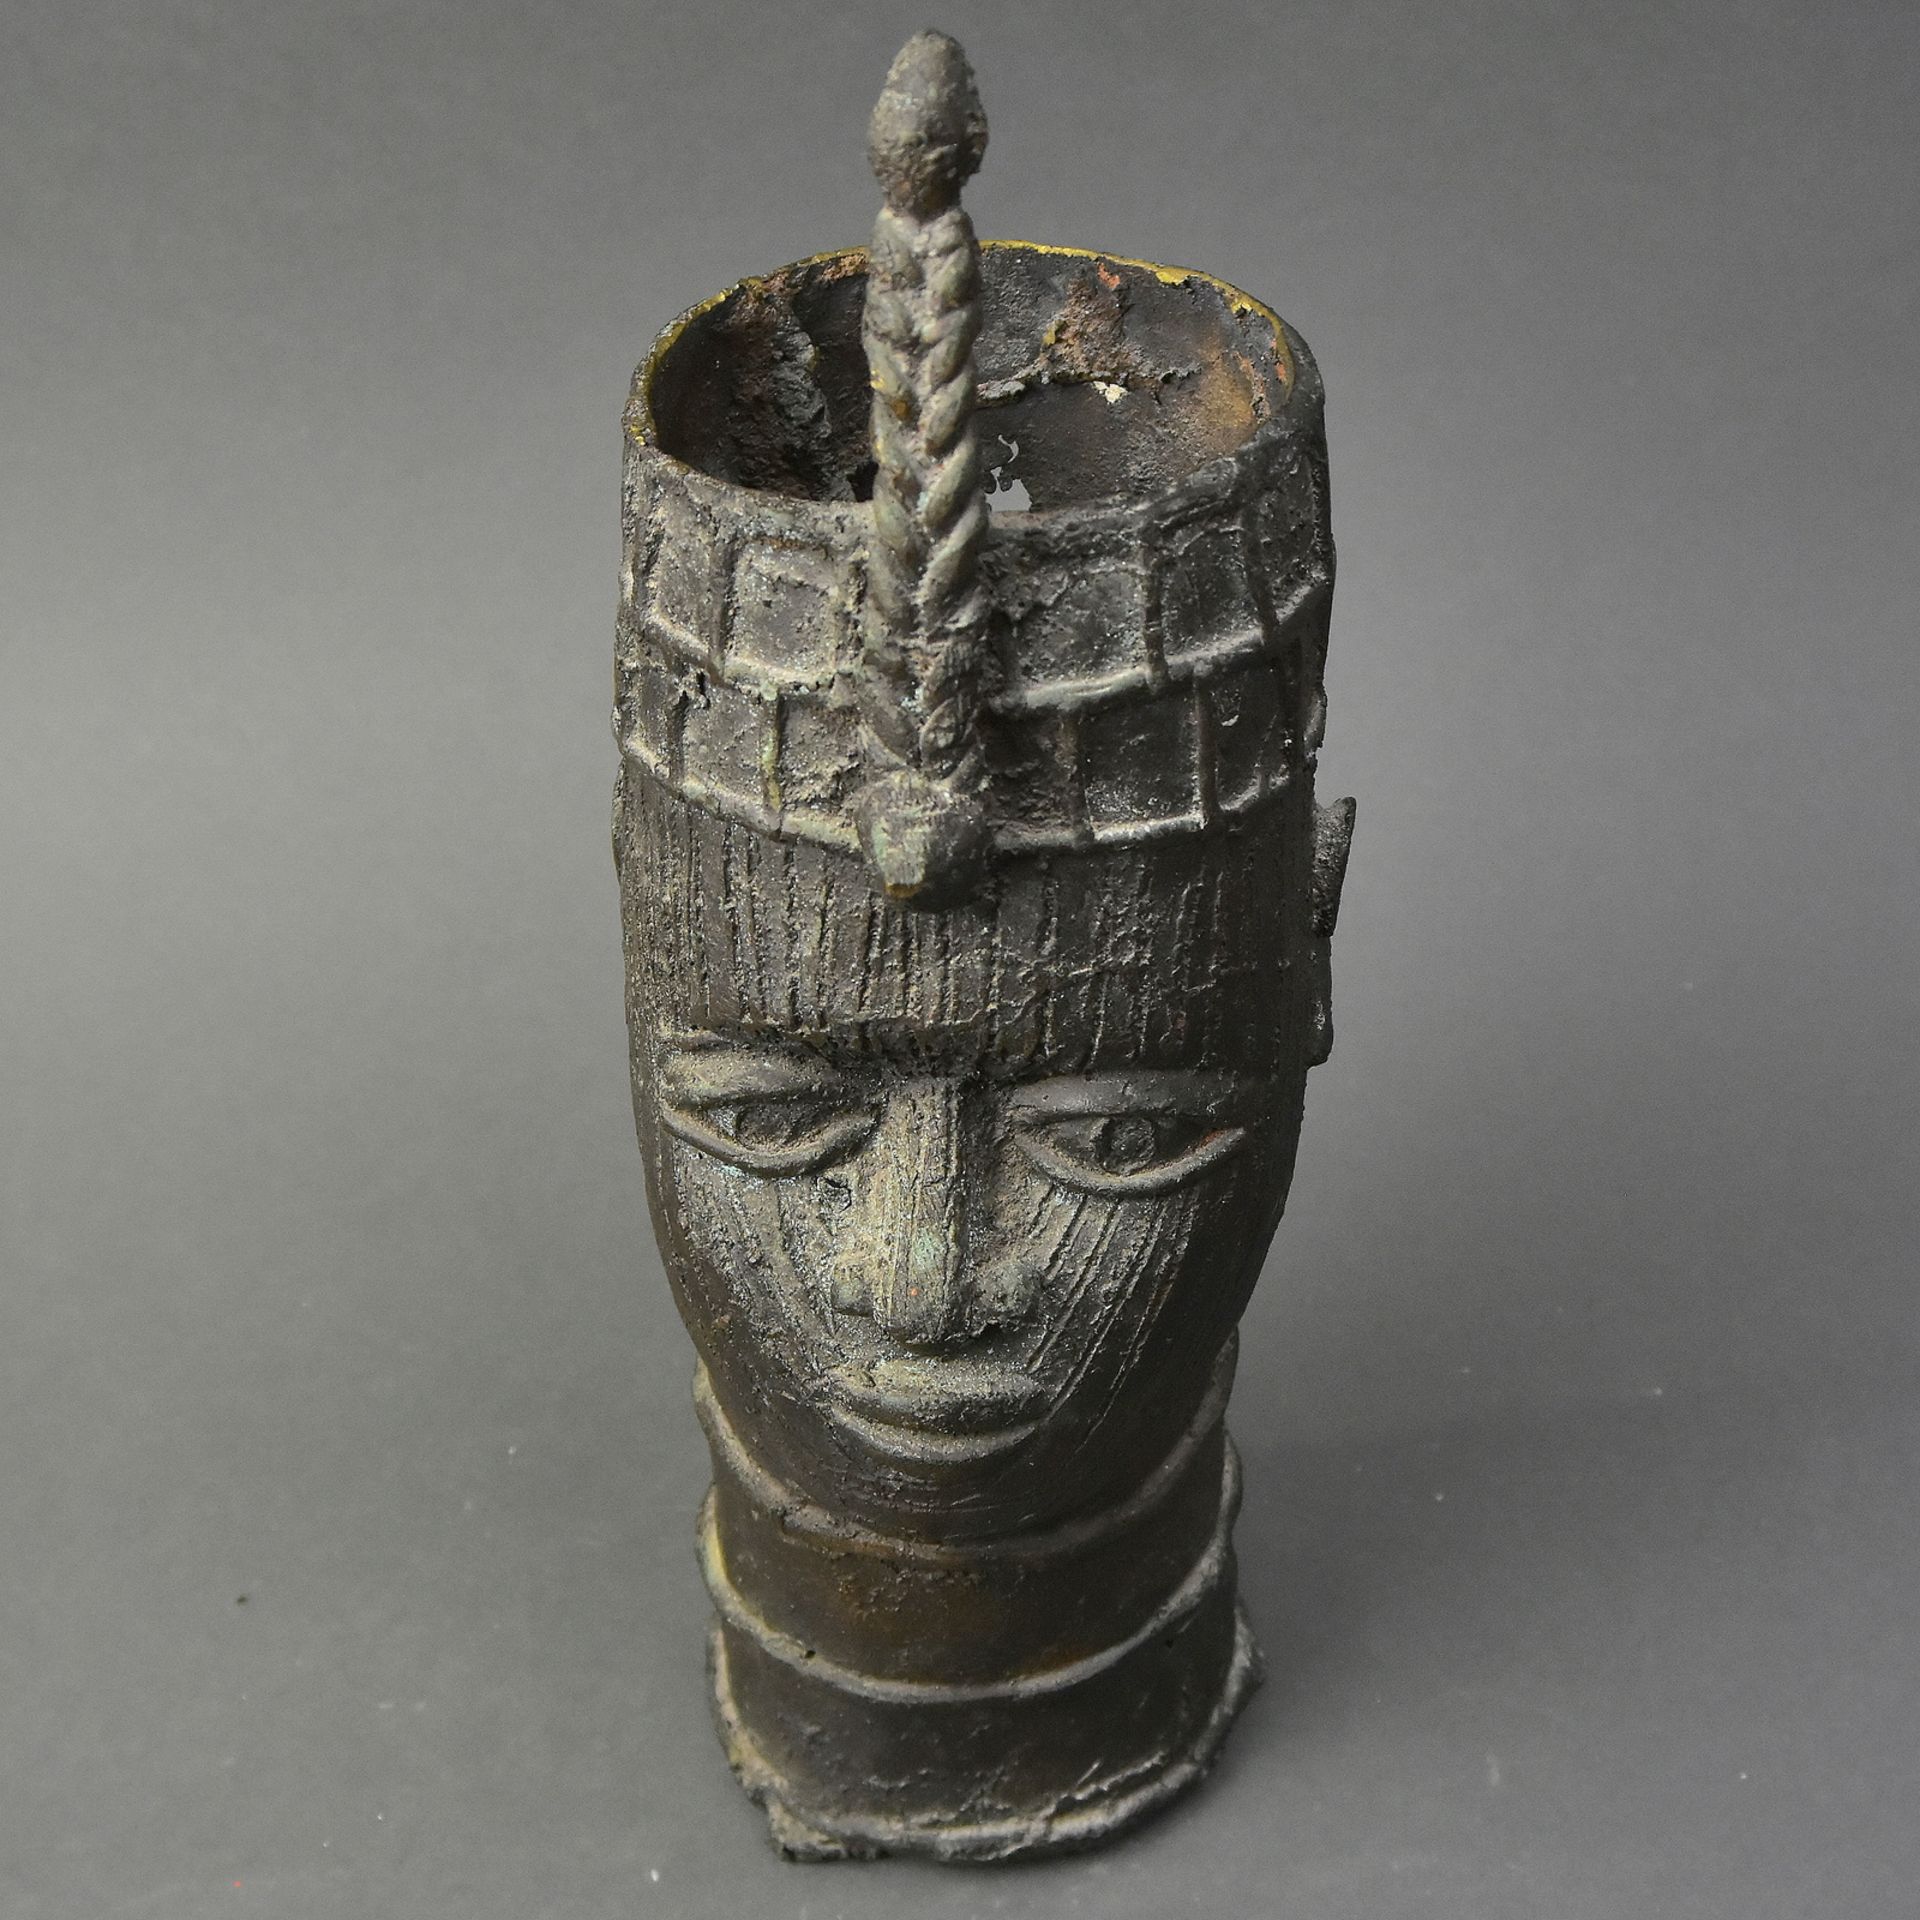 Benin Westafrika Bronze, 20. Jh., Beninkönig in der Art der vorherigen Lose, hohl gegossen,